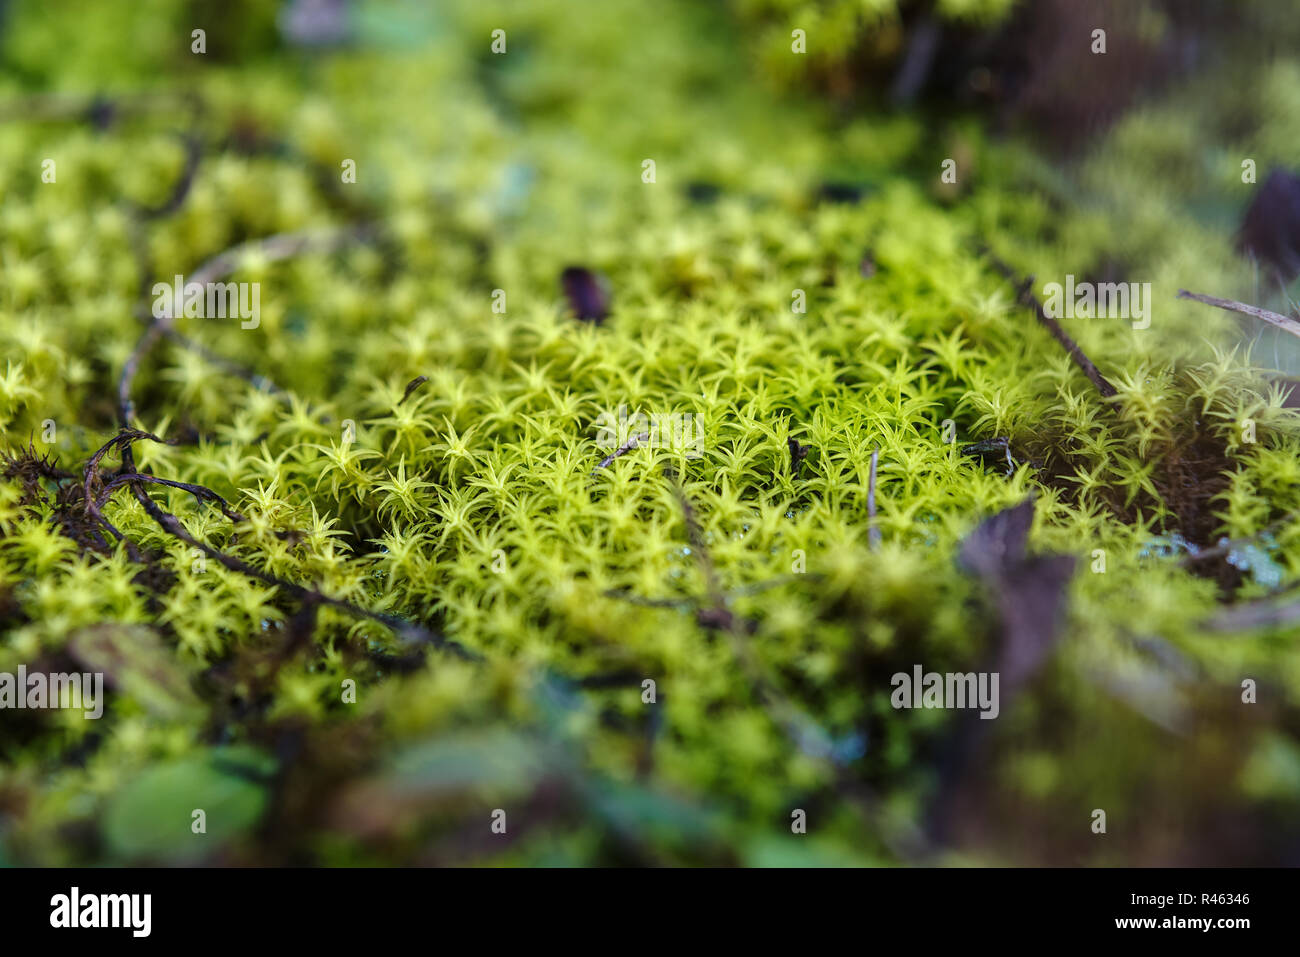 Macro Immagine del muschio verde sul suolo della foresta Foto Stock